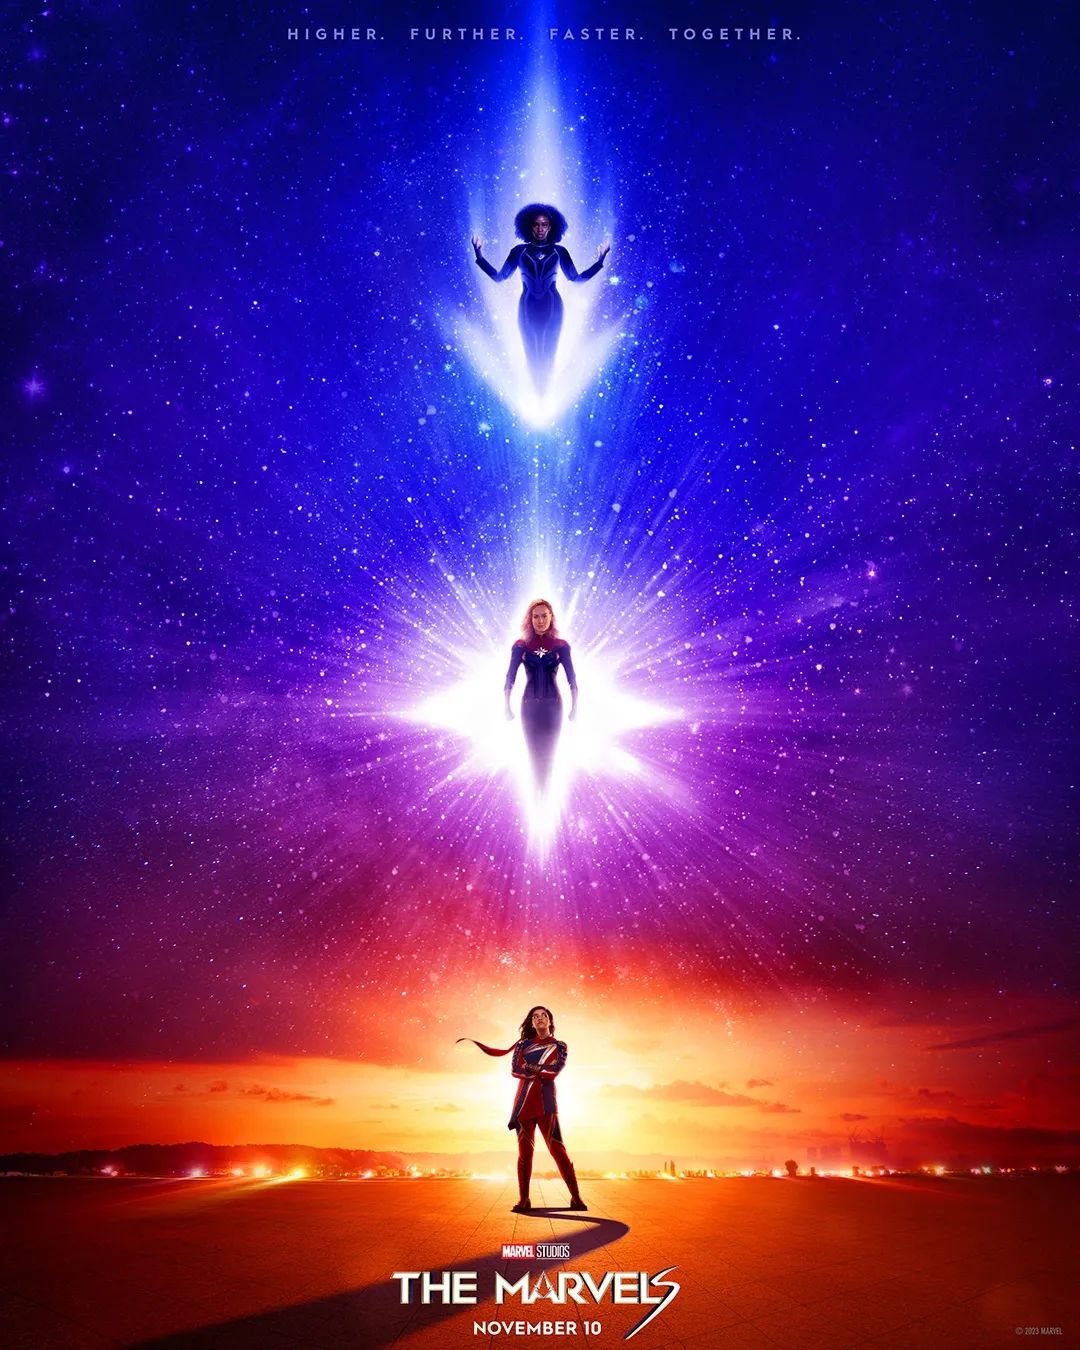 漫威电影《惊奇队长2》将延期至今年11月10号正式上映-插图2